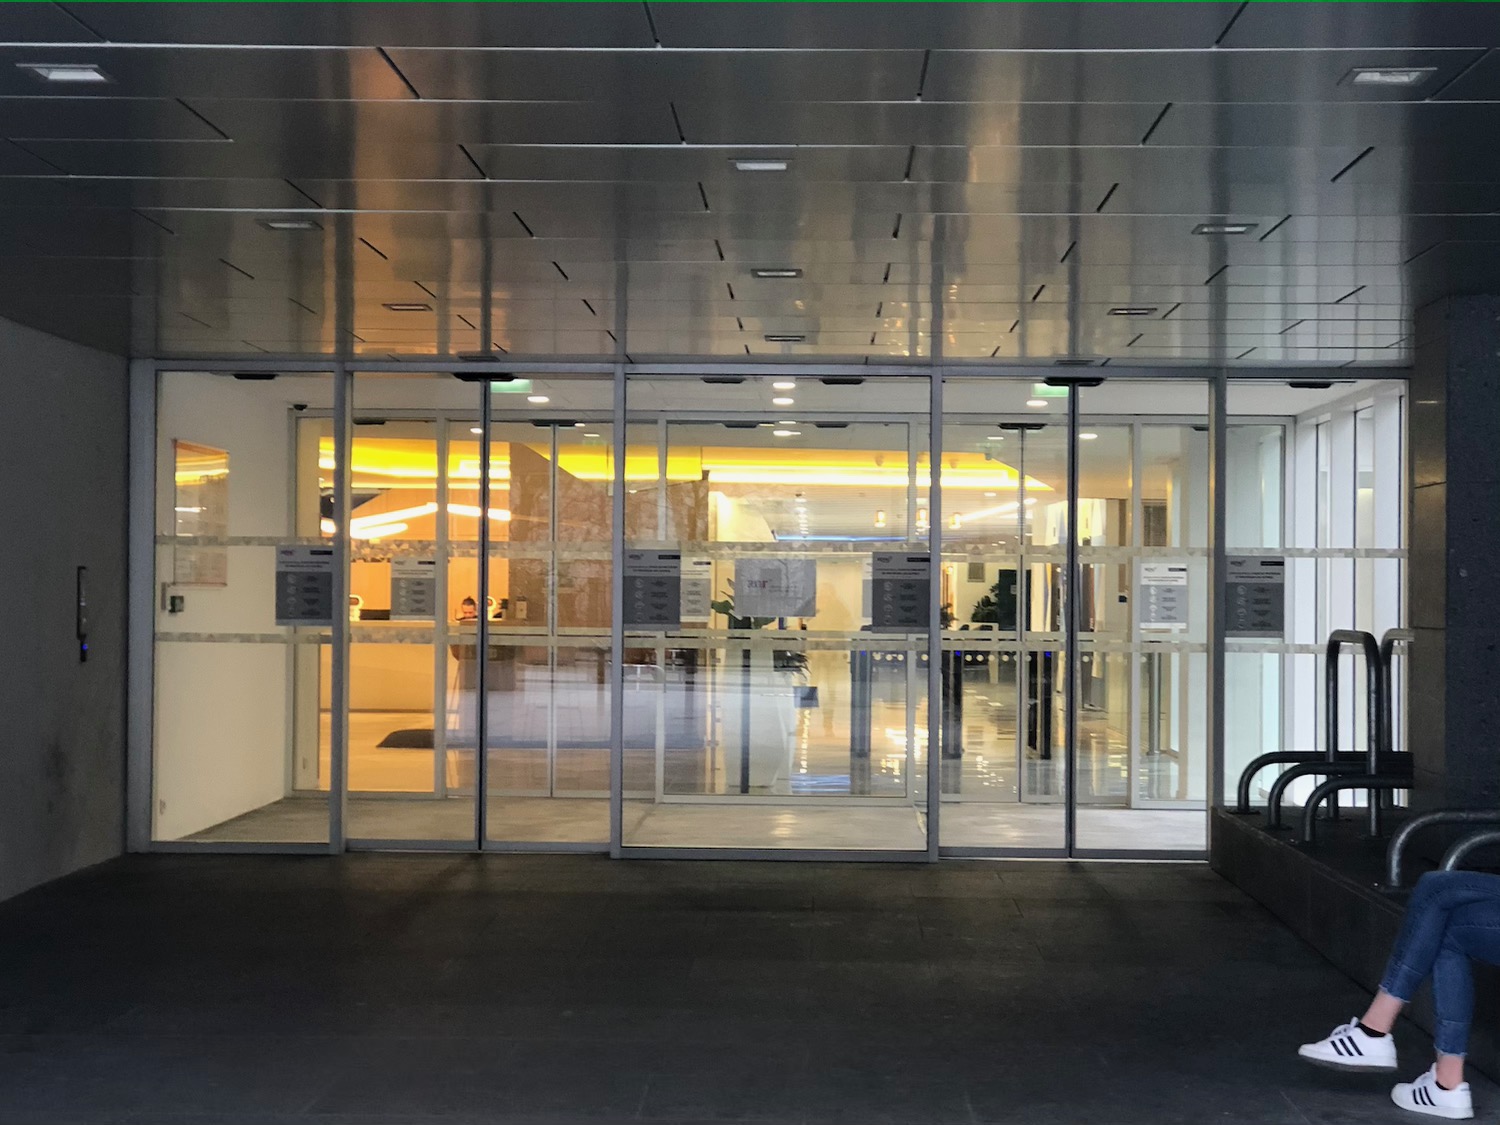 Le hall d’entrée de l’immeuble de bureaux qui abrite le SYCTOM © Globe Reporters